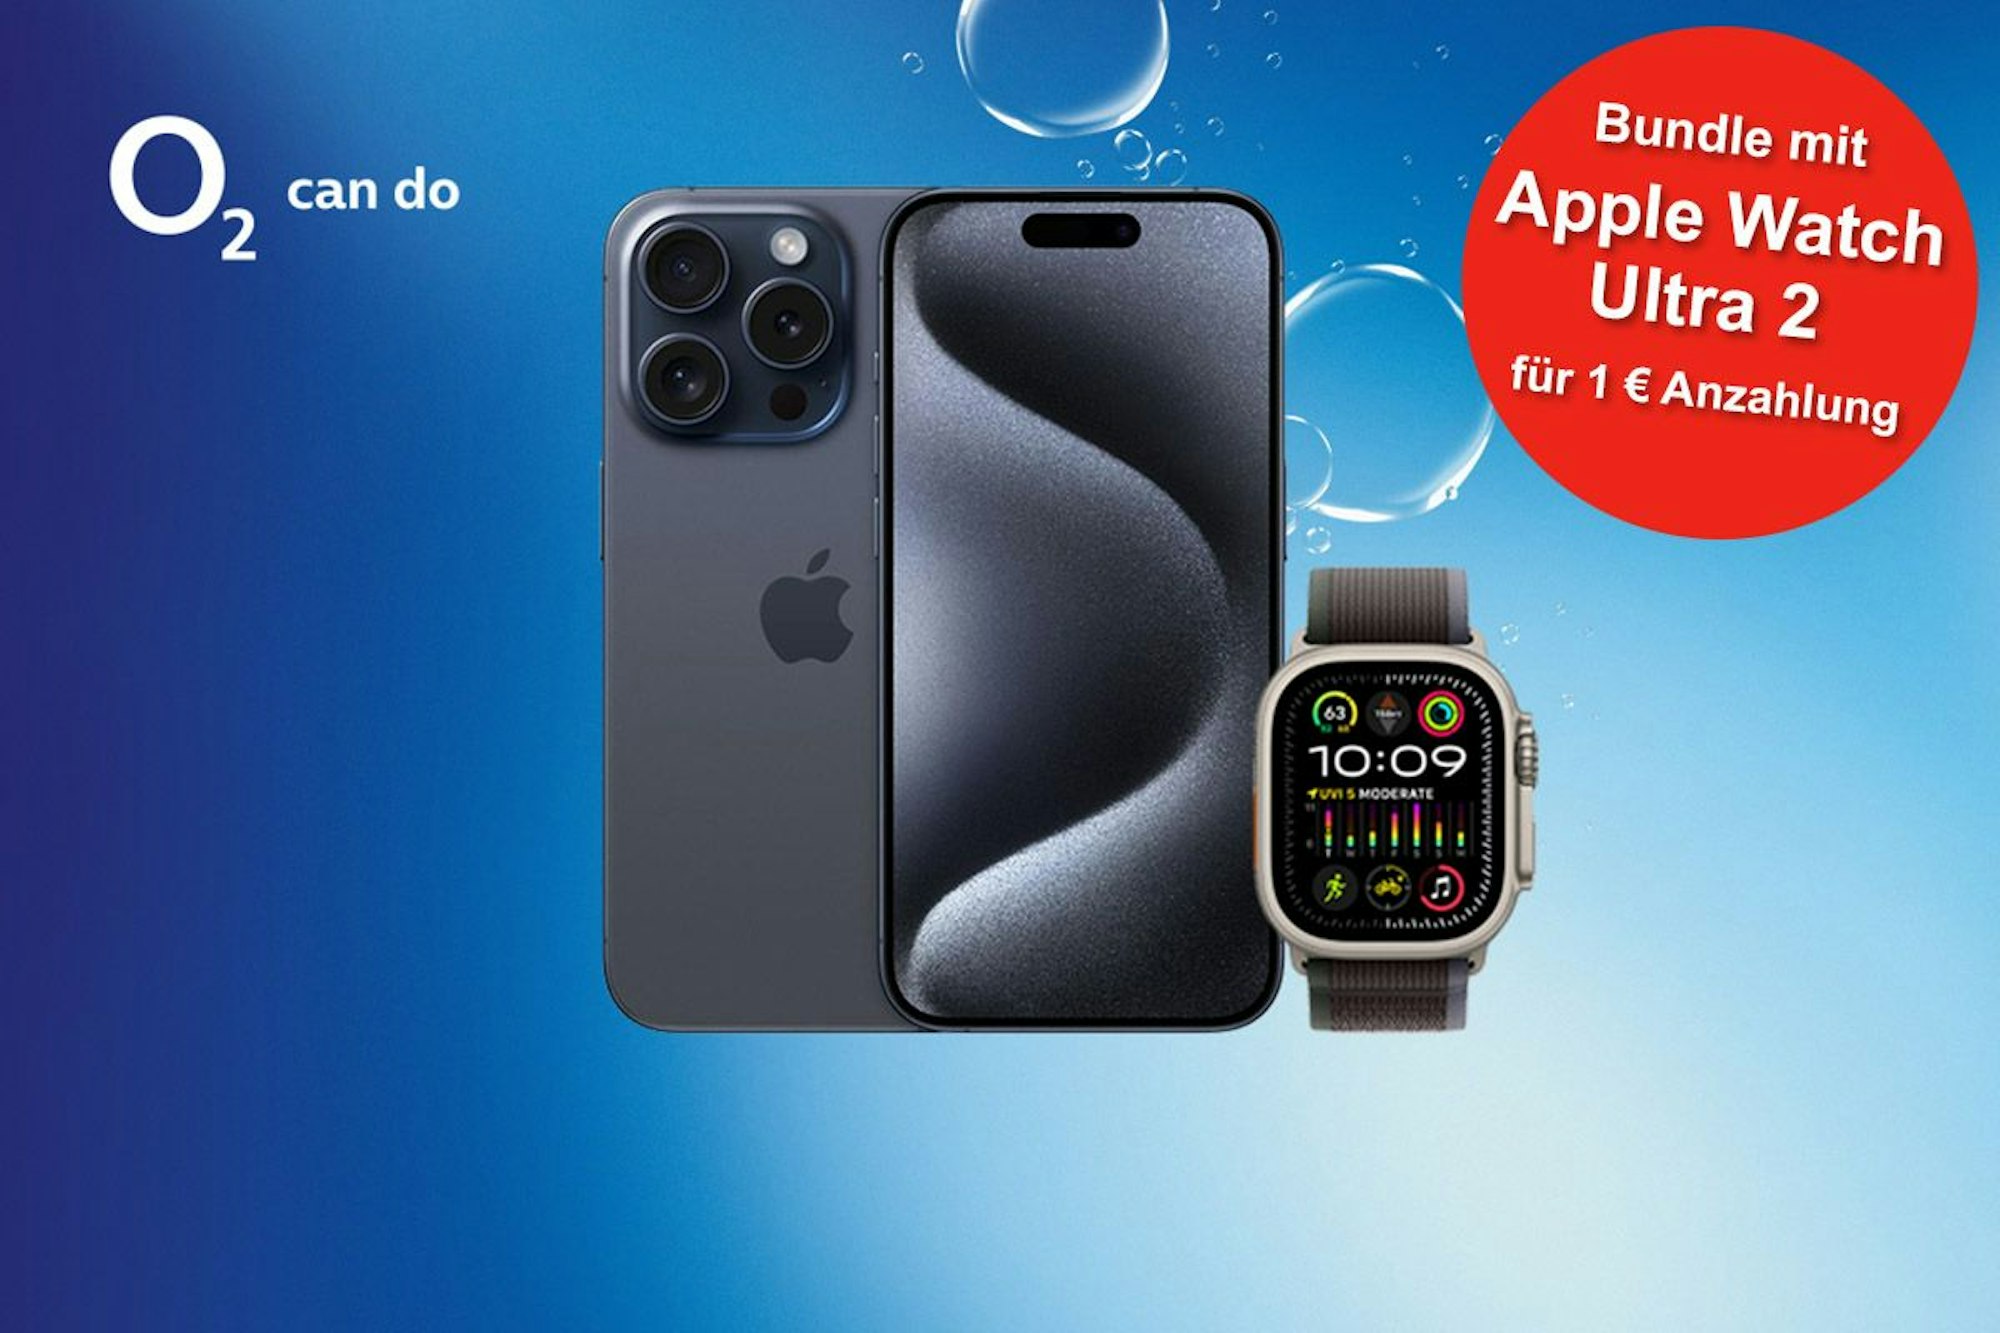 Das Smartphones Apple iPhone 15 Pro Max mit Apple Watch Ultra 2 vor blauem Hintergrund mit Luftblasen im Wasser und o2 Logo.